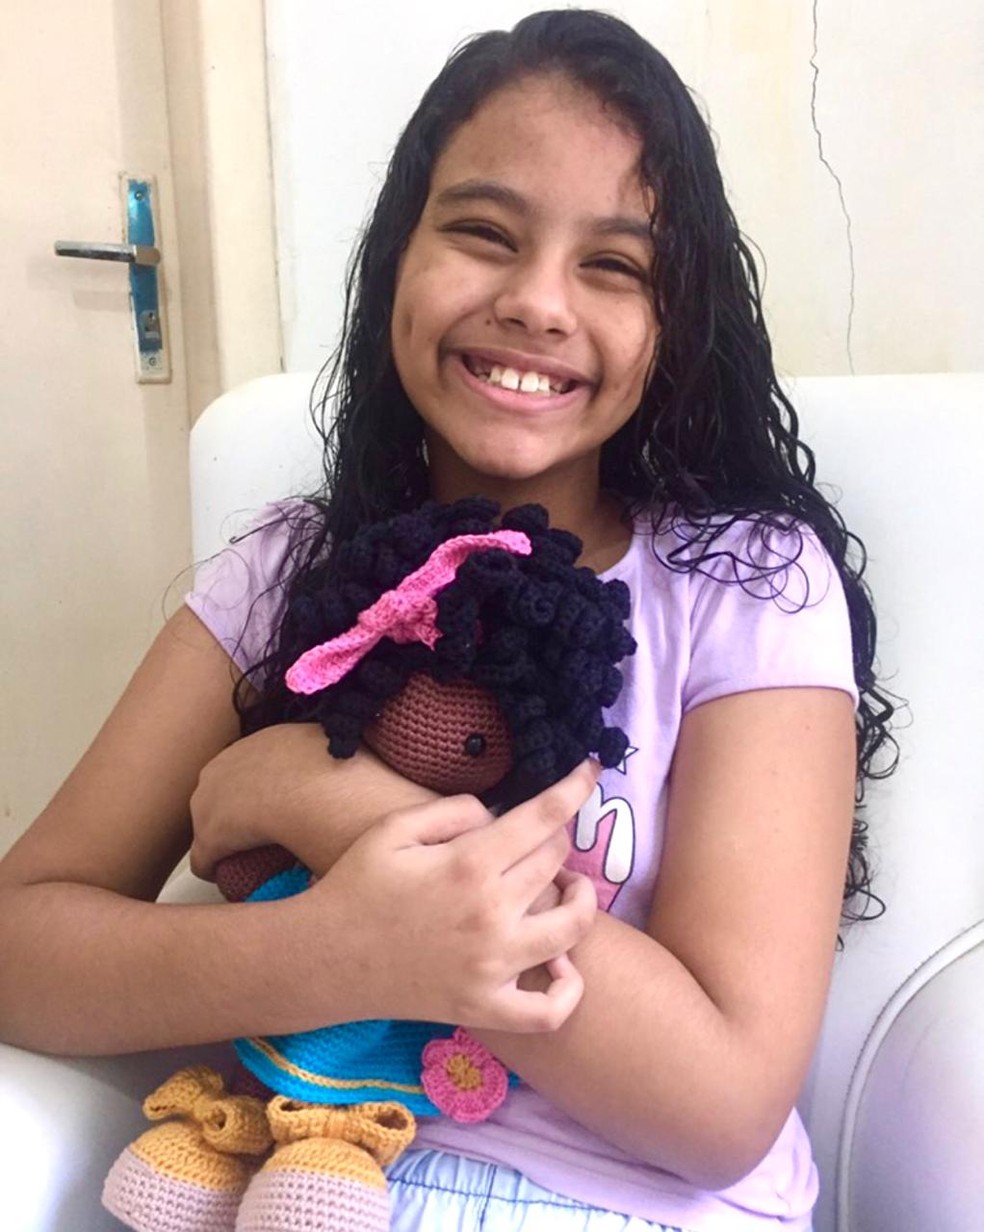 A menina ficou muito feliz com a boneca, negra e de cabelo cacheado, como ela. — Foto: Brenda de Brito/Arquivo pessoal